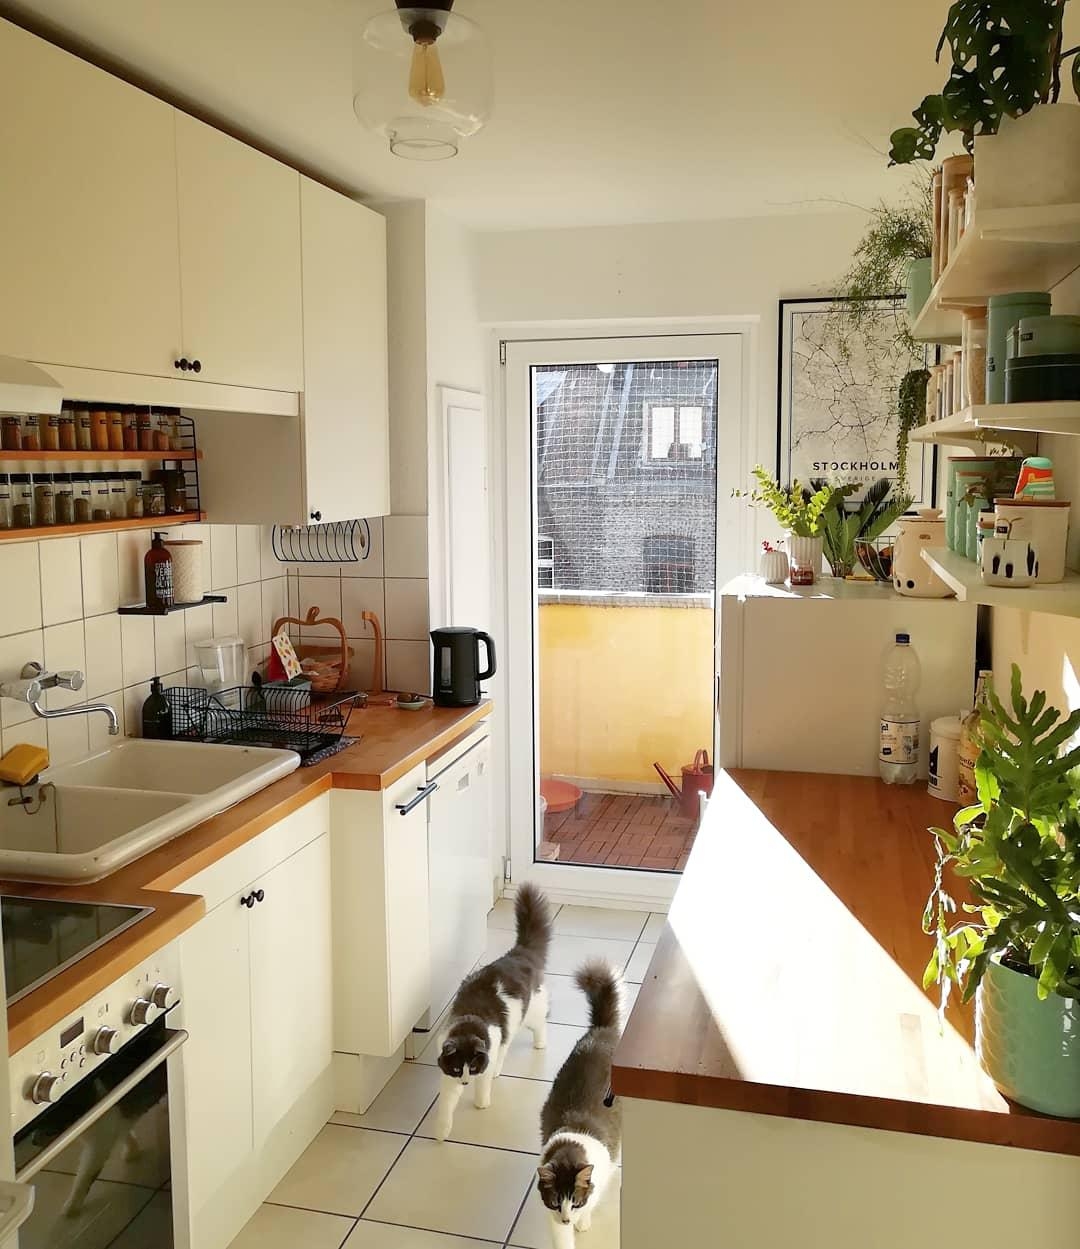 #küchenliebe #shelfie #kitchen #urbanjunglebloggers #urbanjungle